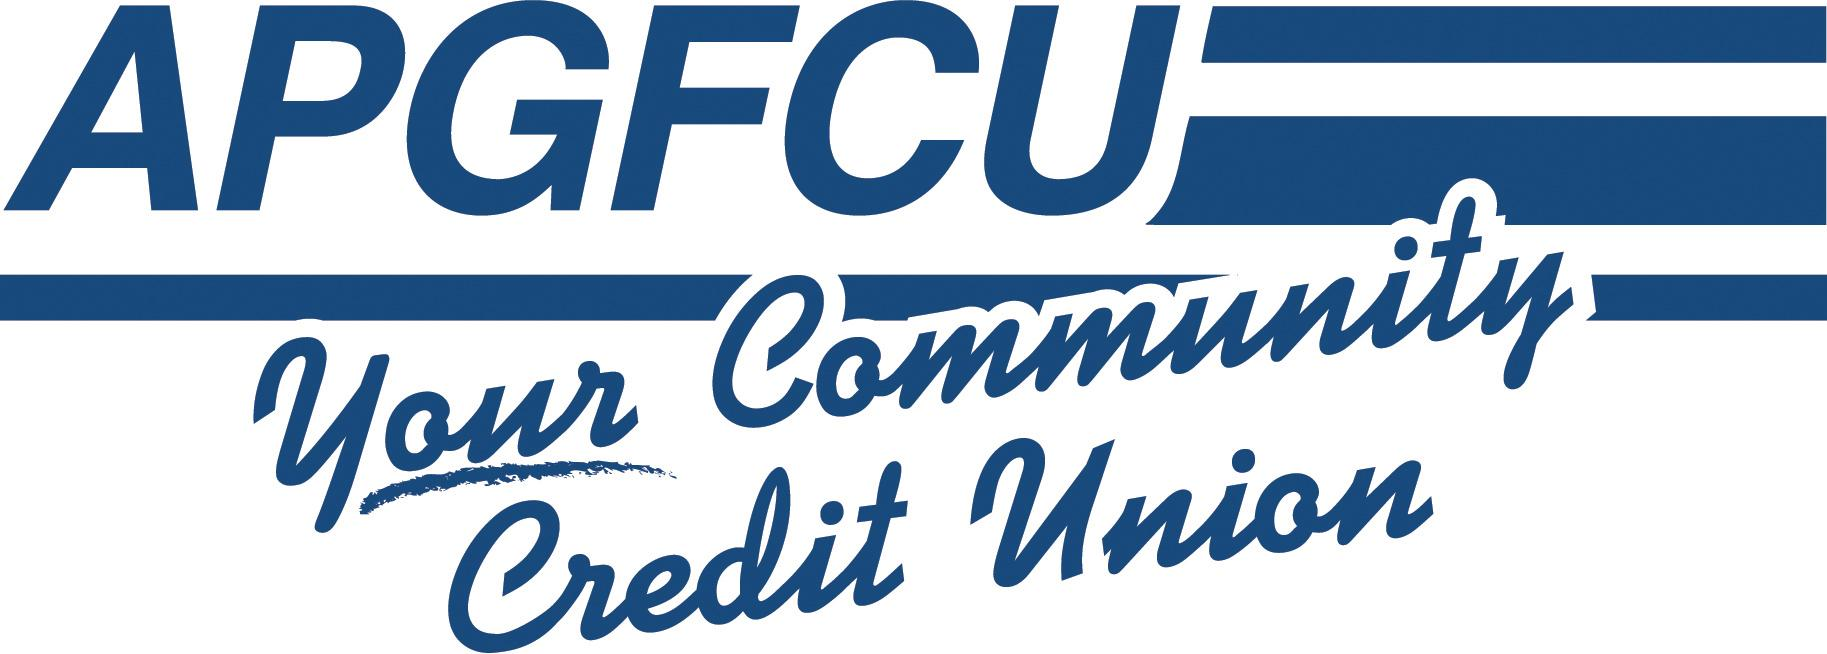 APG Federal Credit Union